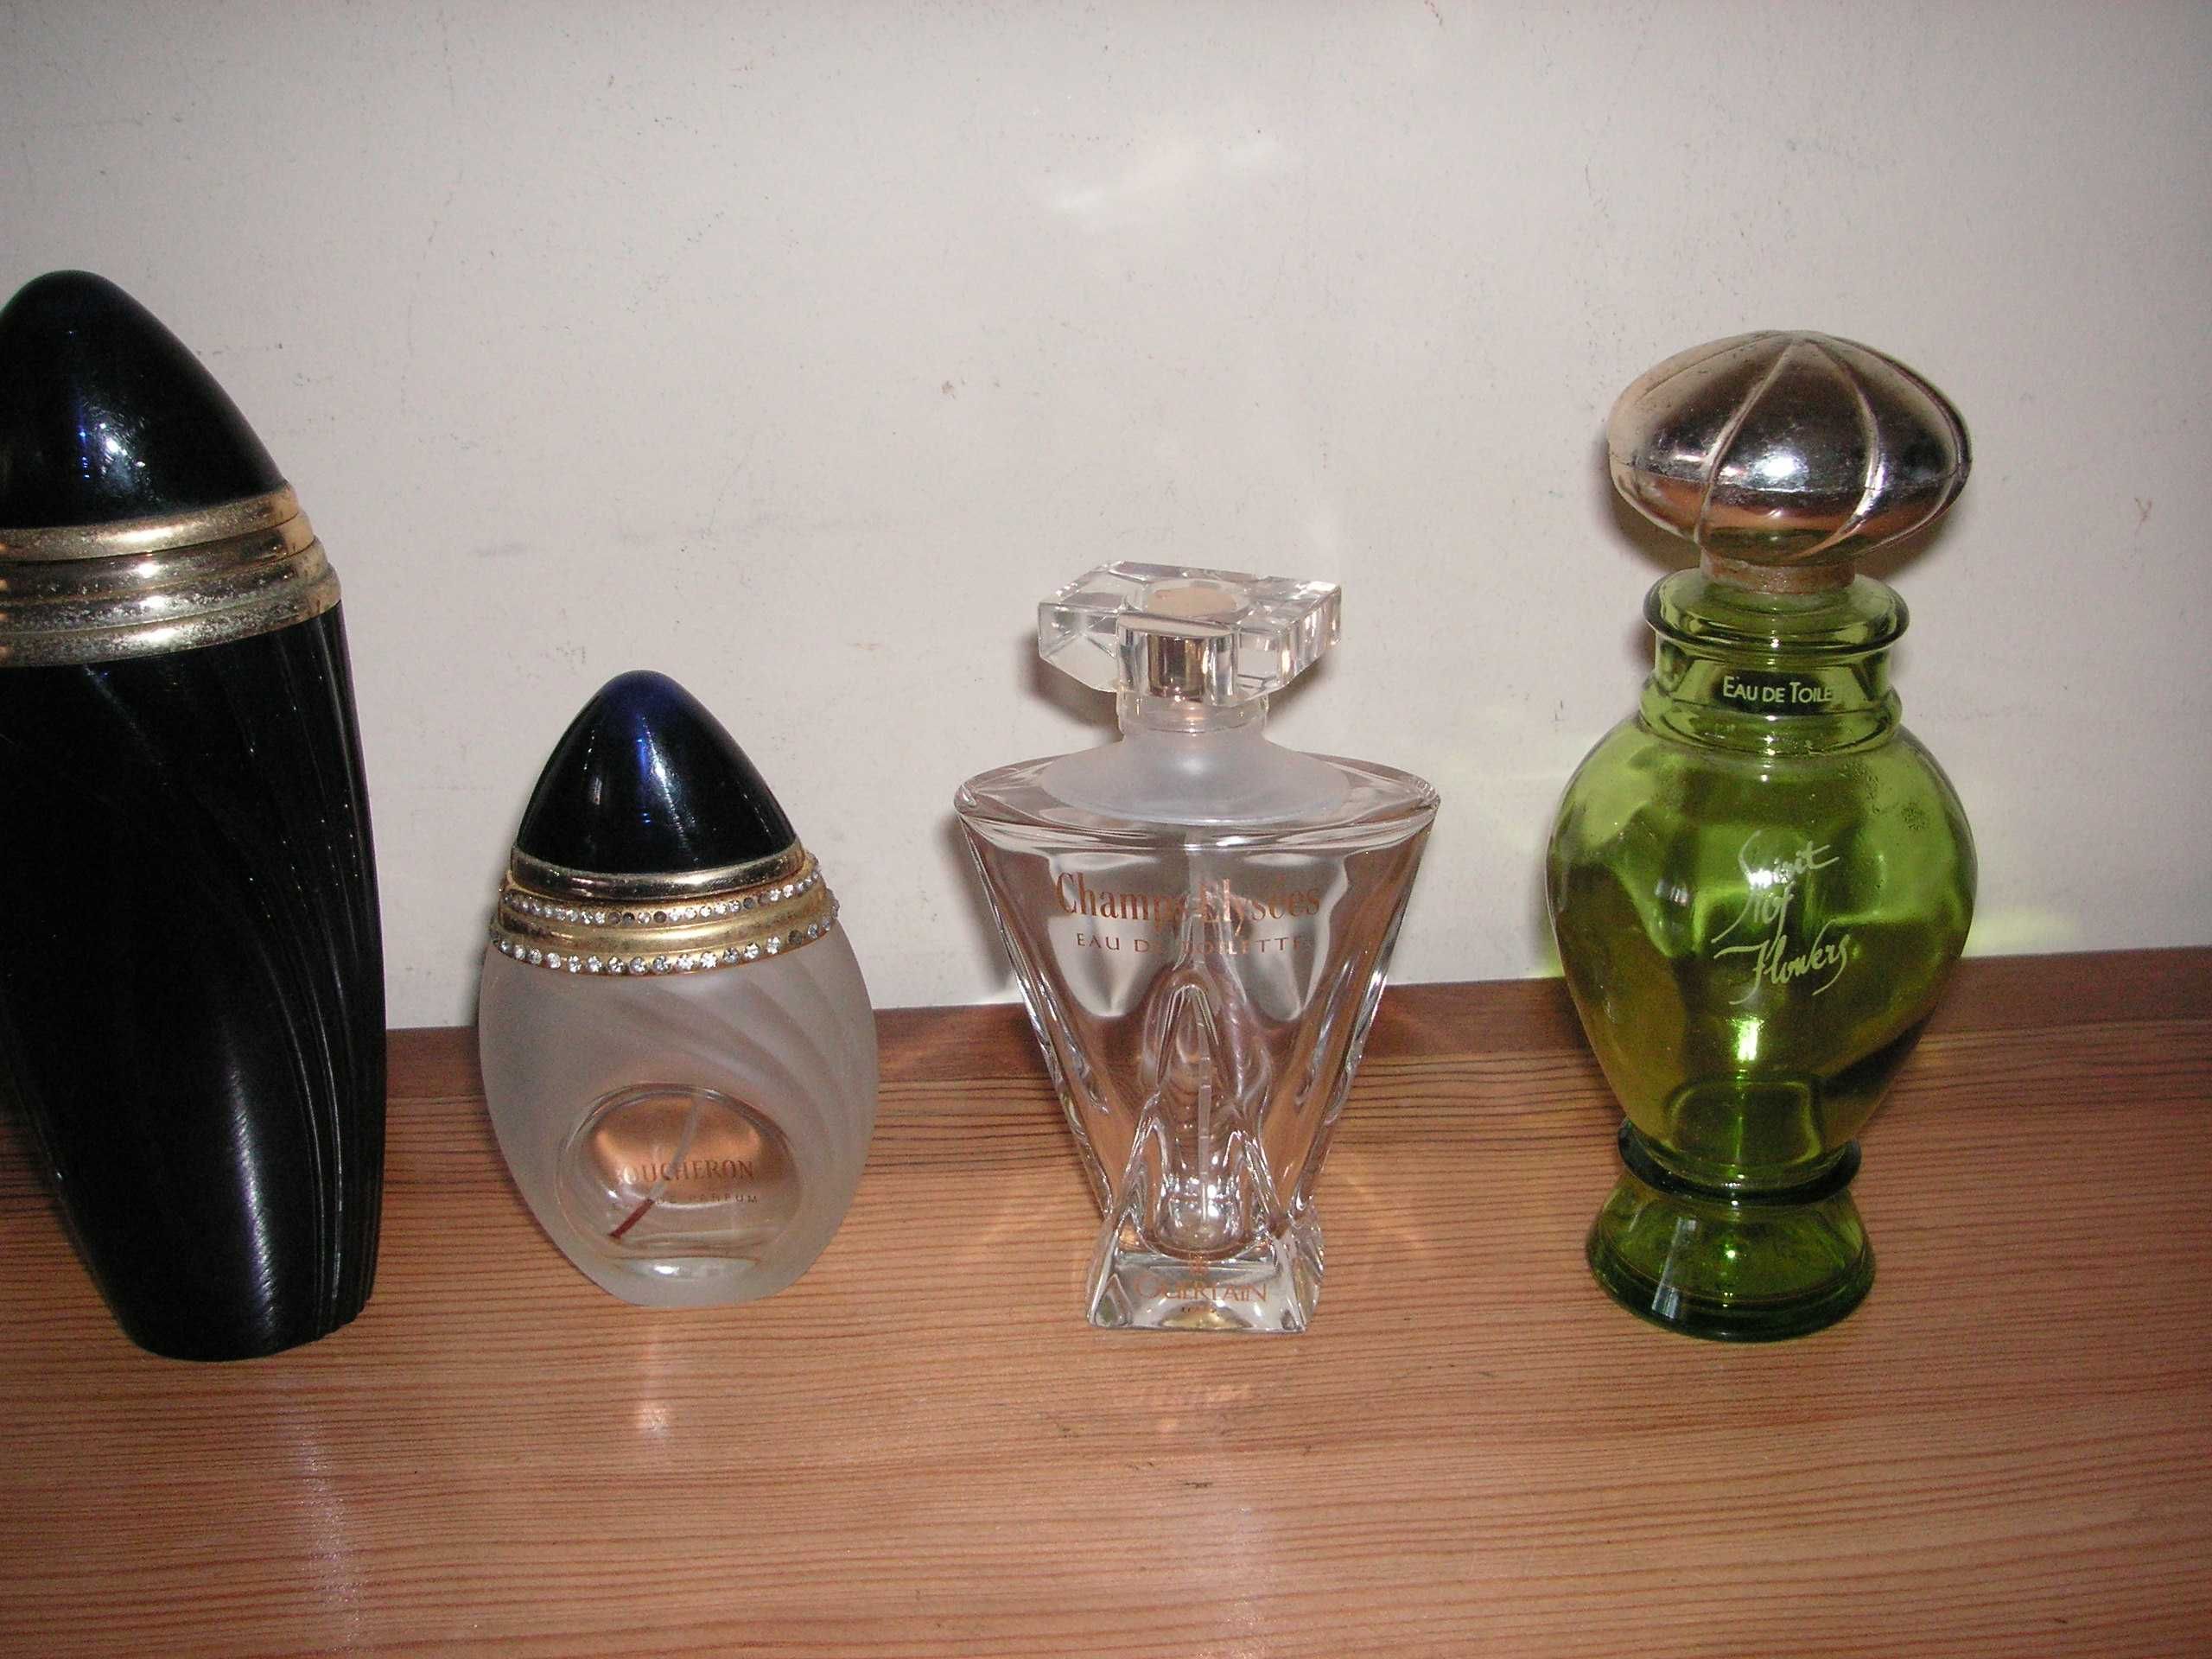 Colecionadores - Frascos de Perfume de Marca Vazios